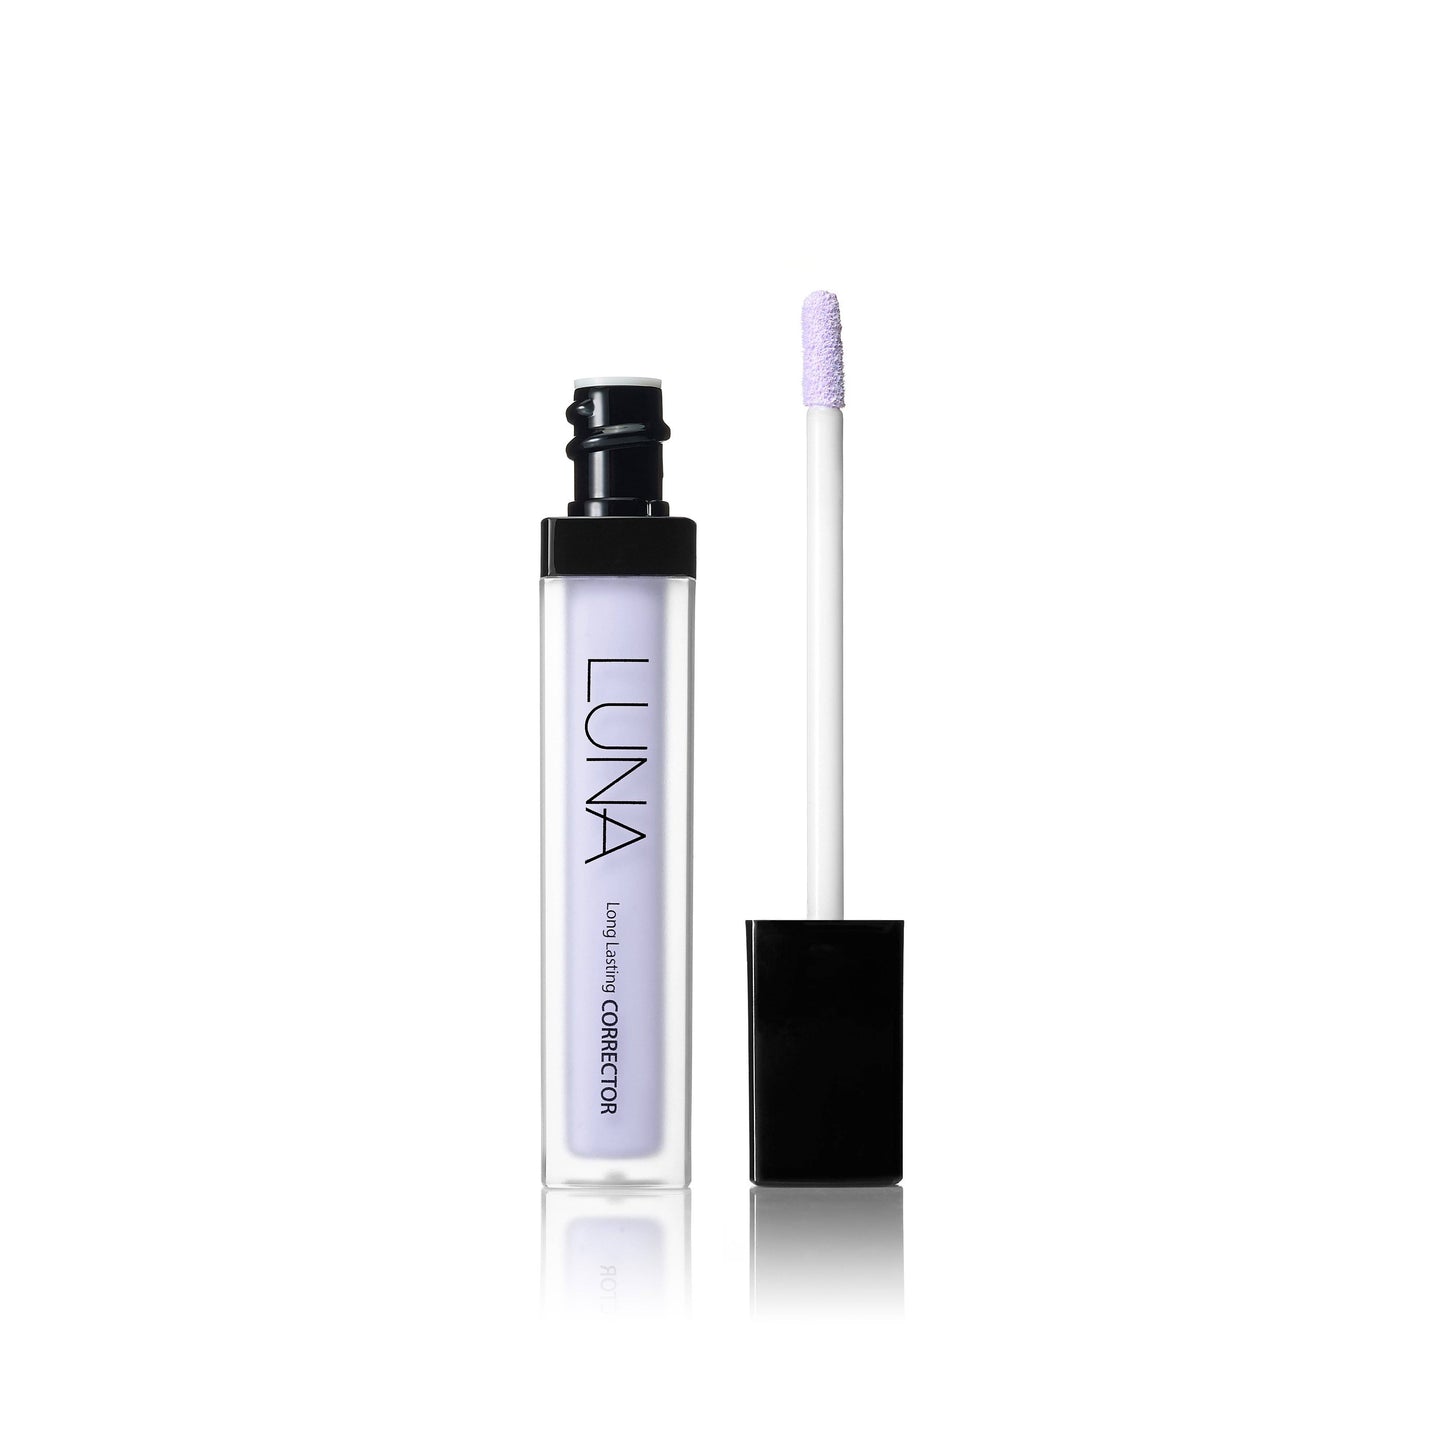 LunaLong Lasting Corrector (Choose your colour) 7.5g - La Cosmetique